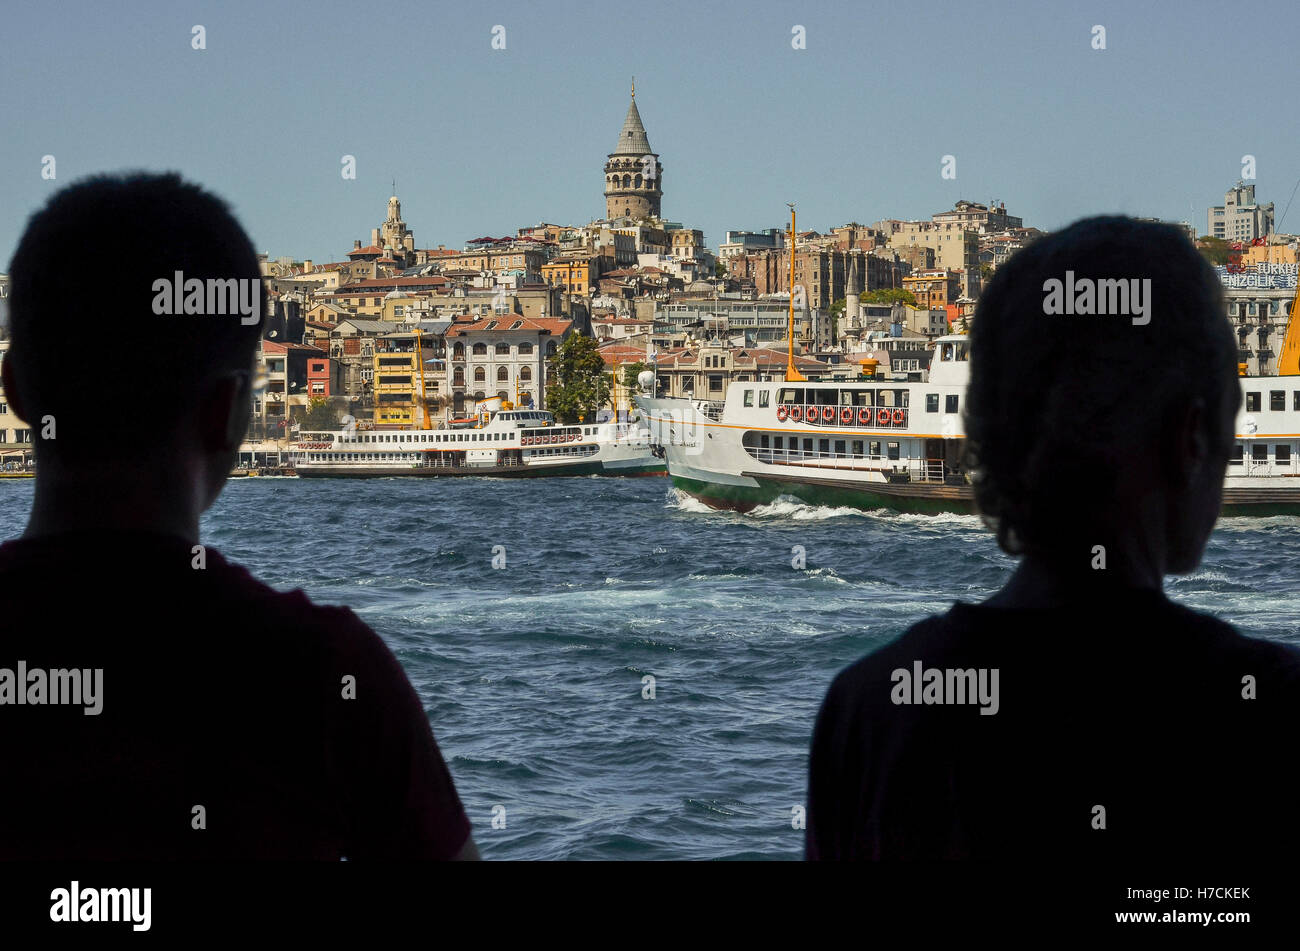 Teilansicht von Istanbul über das Goldene Horn.  Galata-Turm kann gesehen werden, dominiert die Skyline in der oberen Mitte des Bildes Stockfoto